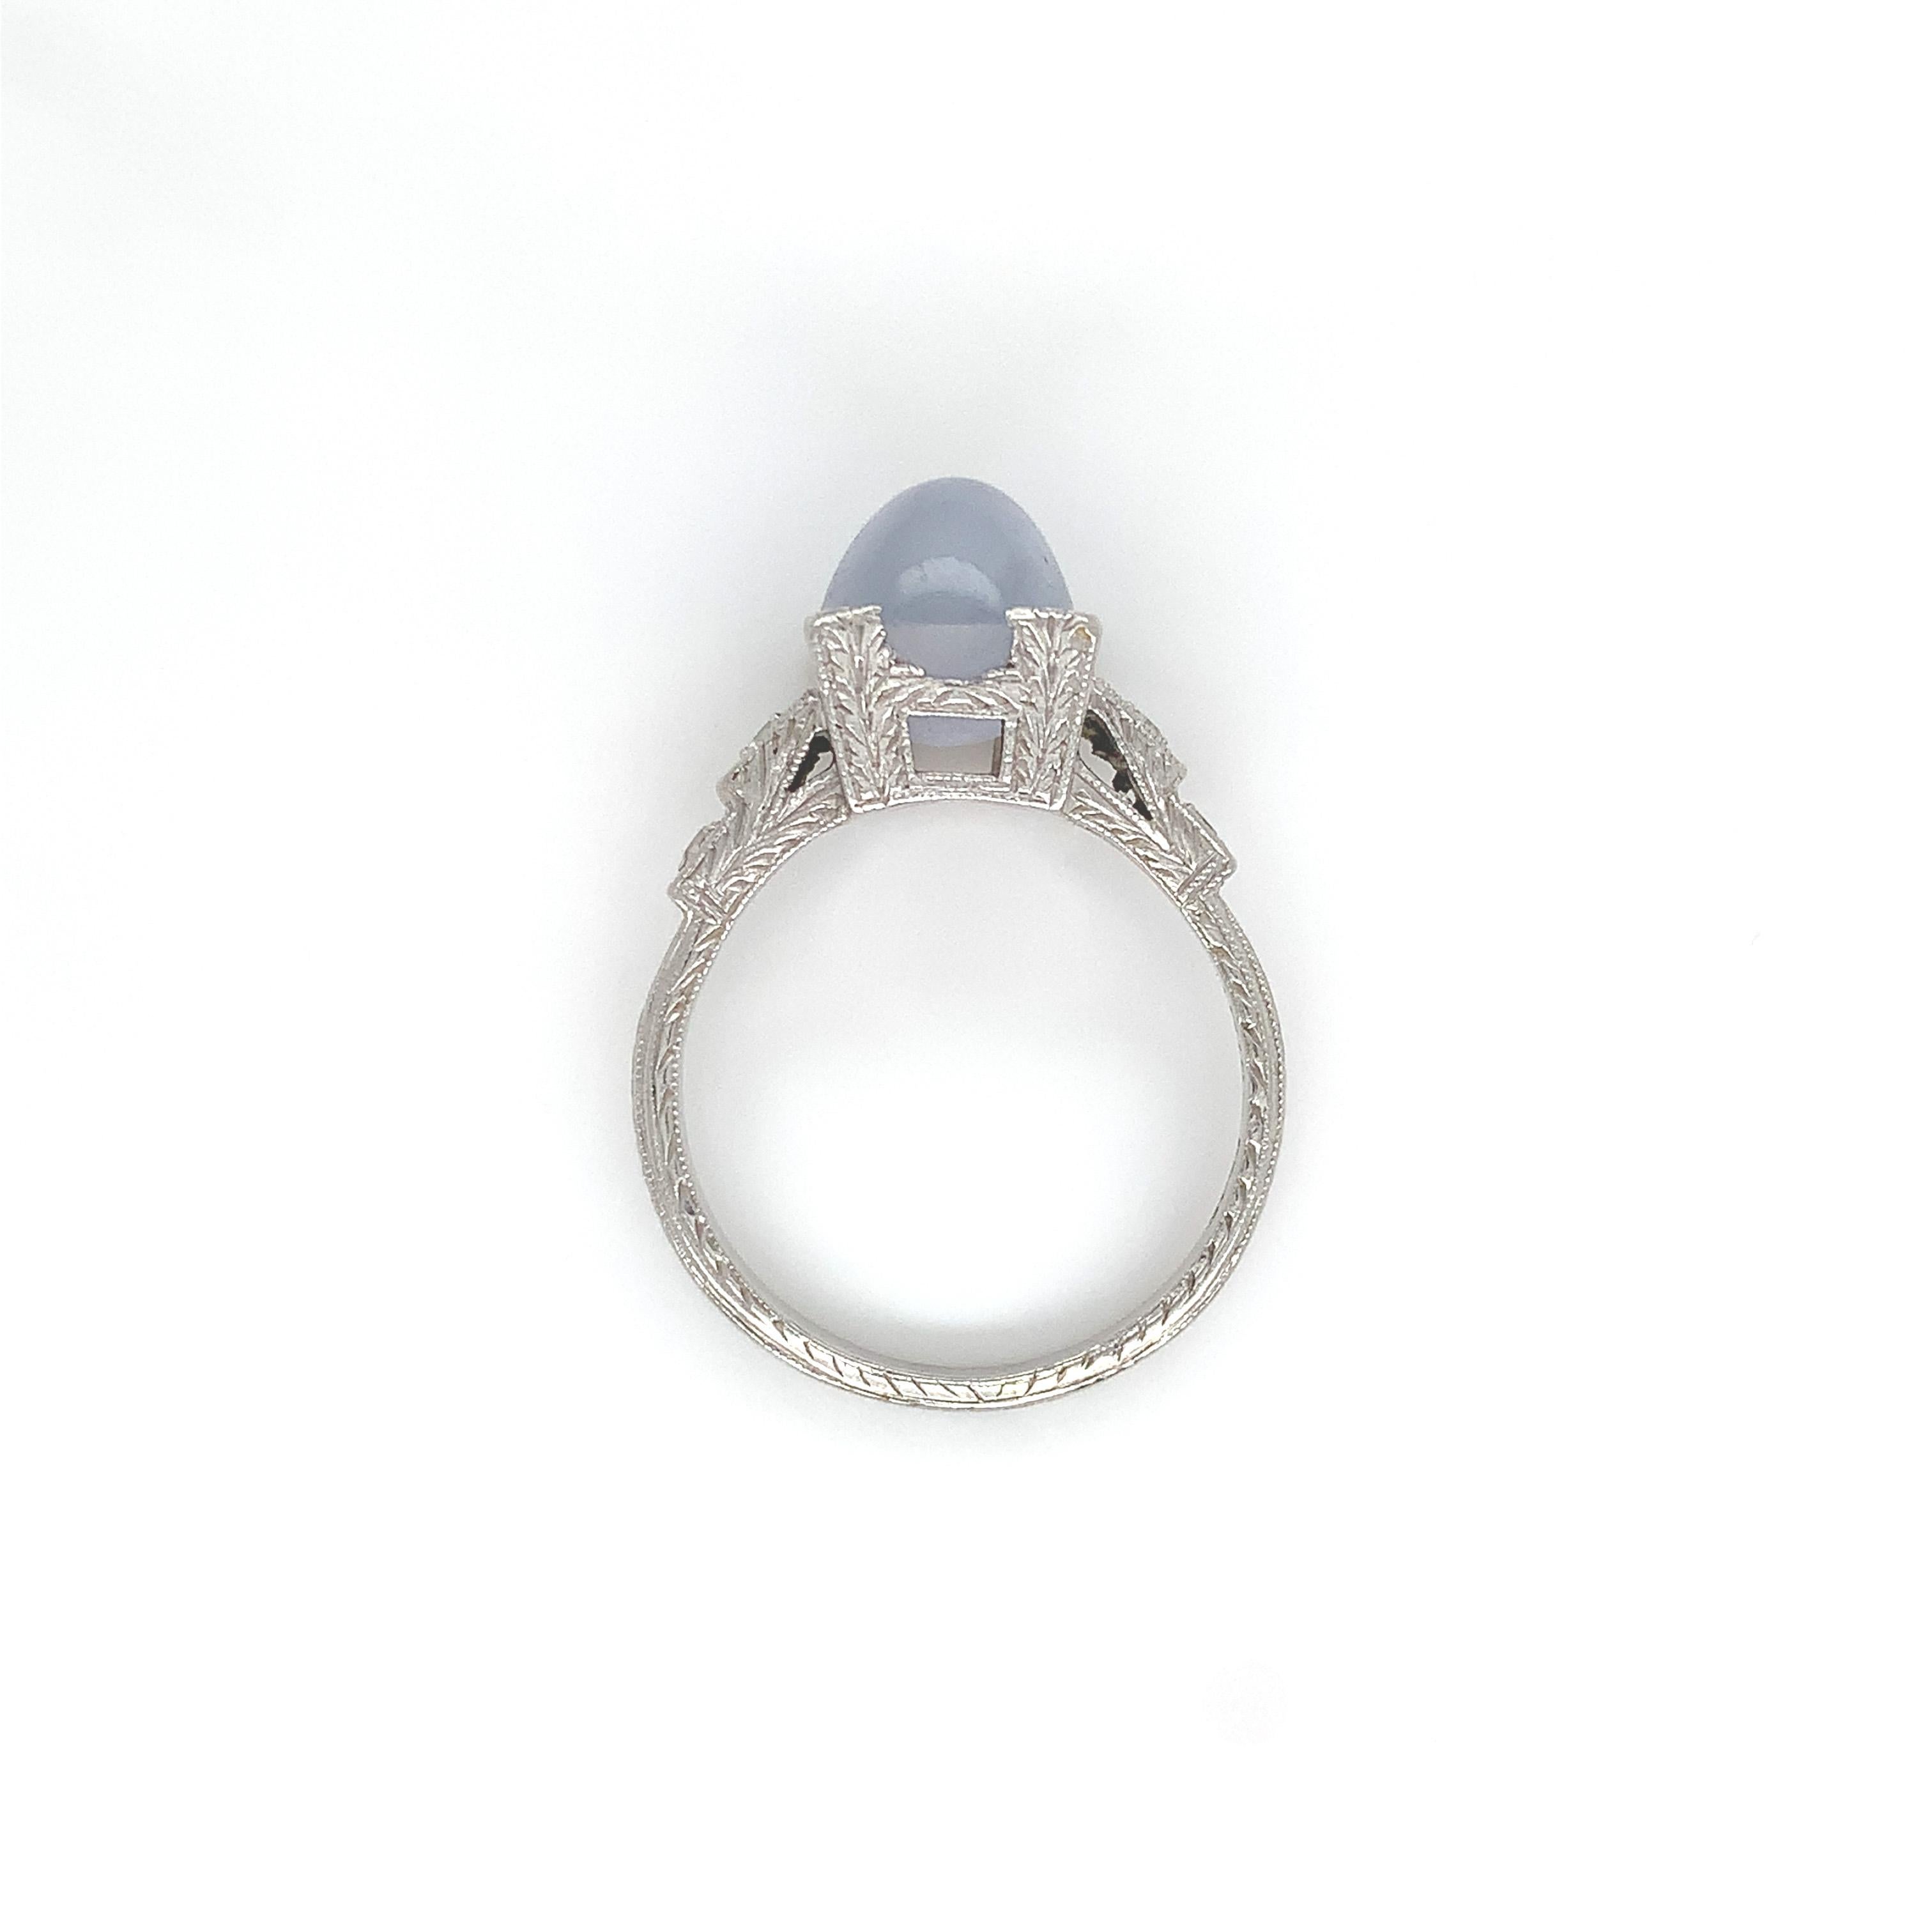 Platinring mit einem hellblau/grauen Cabochon-Sternsaphir. Der Saphir misst etwa 8,7 mm x 7,2 mm. Es gibt 4 kleine runde Diamanten Akzente, 2 messen etwa 1,8 mm und 2 etwa 1,5 mm. Die Platinfassung ist auf 3 Seiten handgraviert und sehr